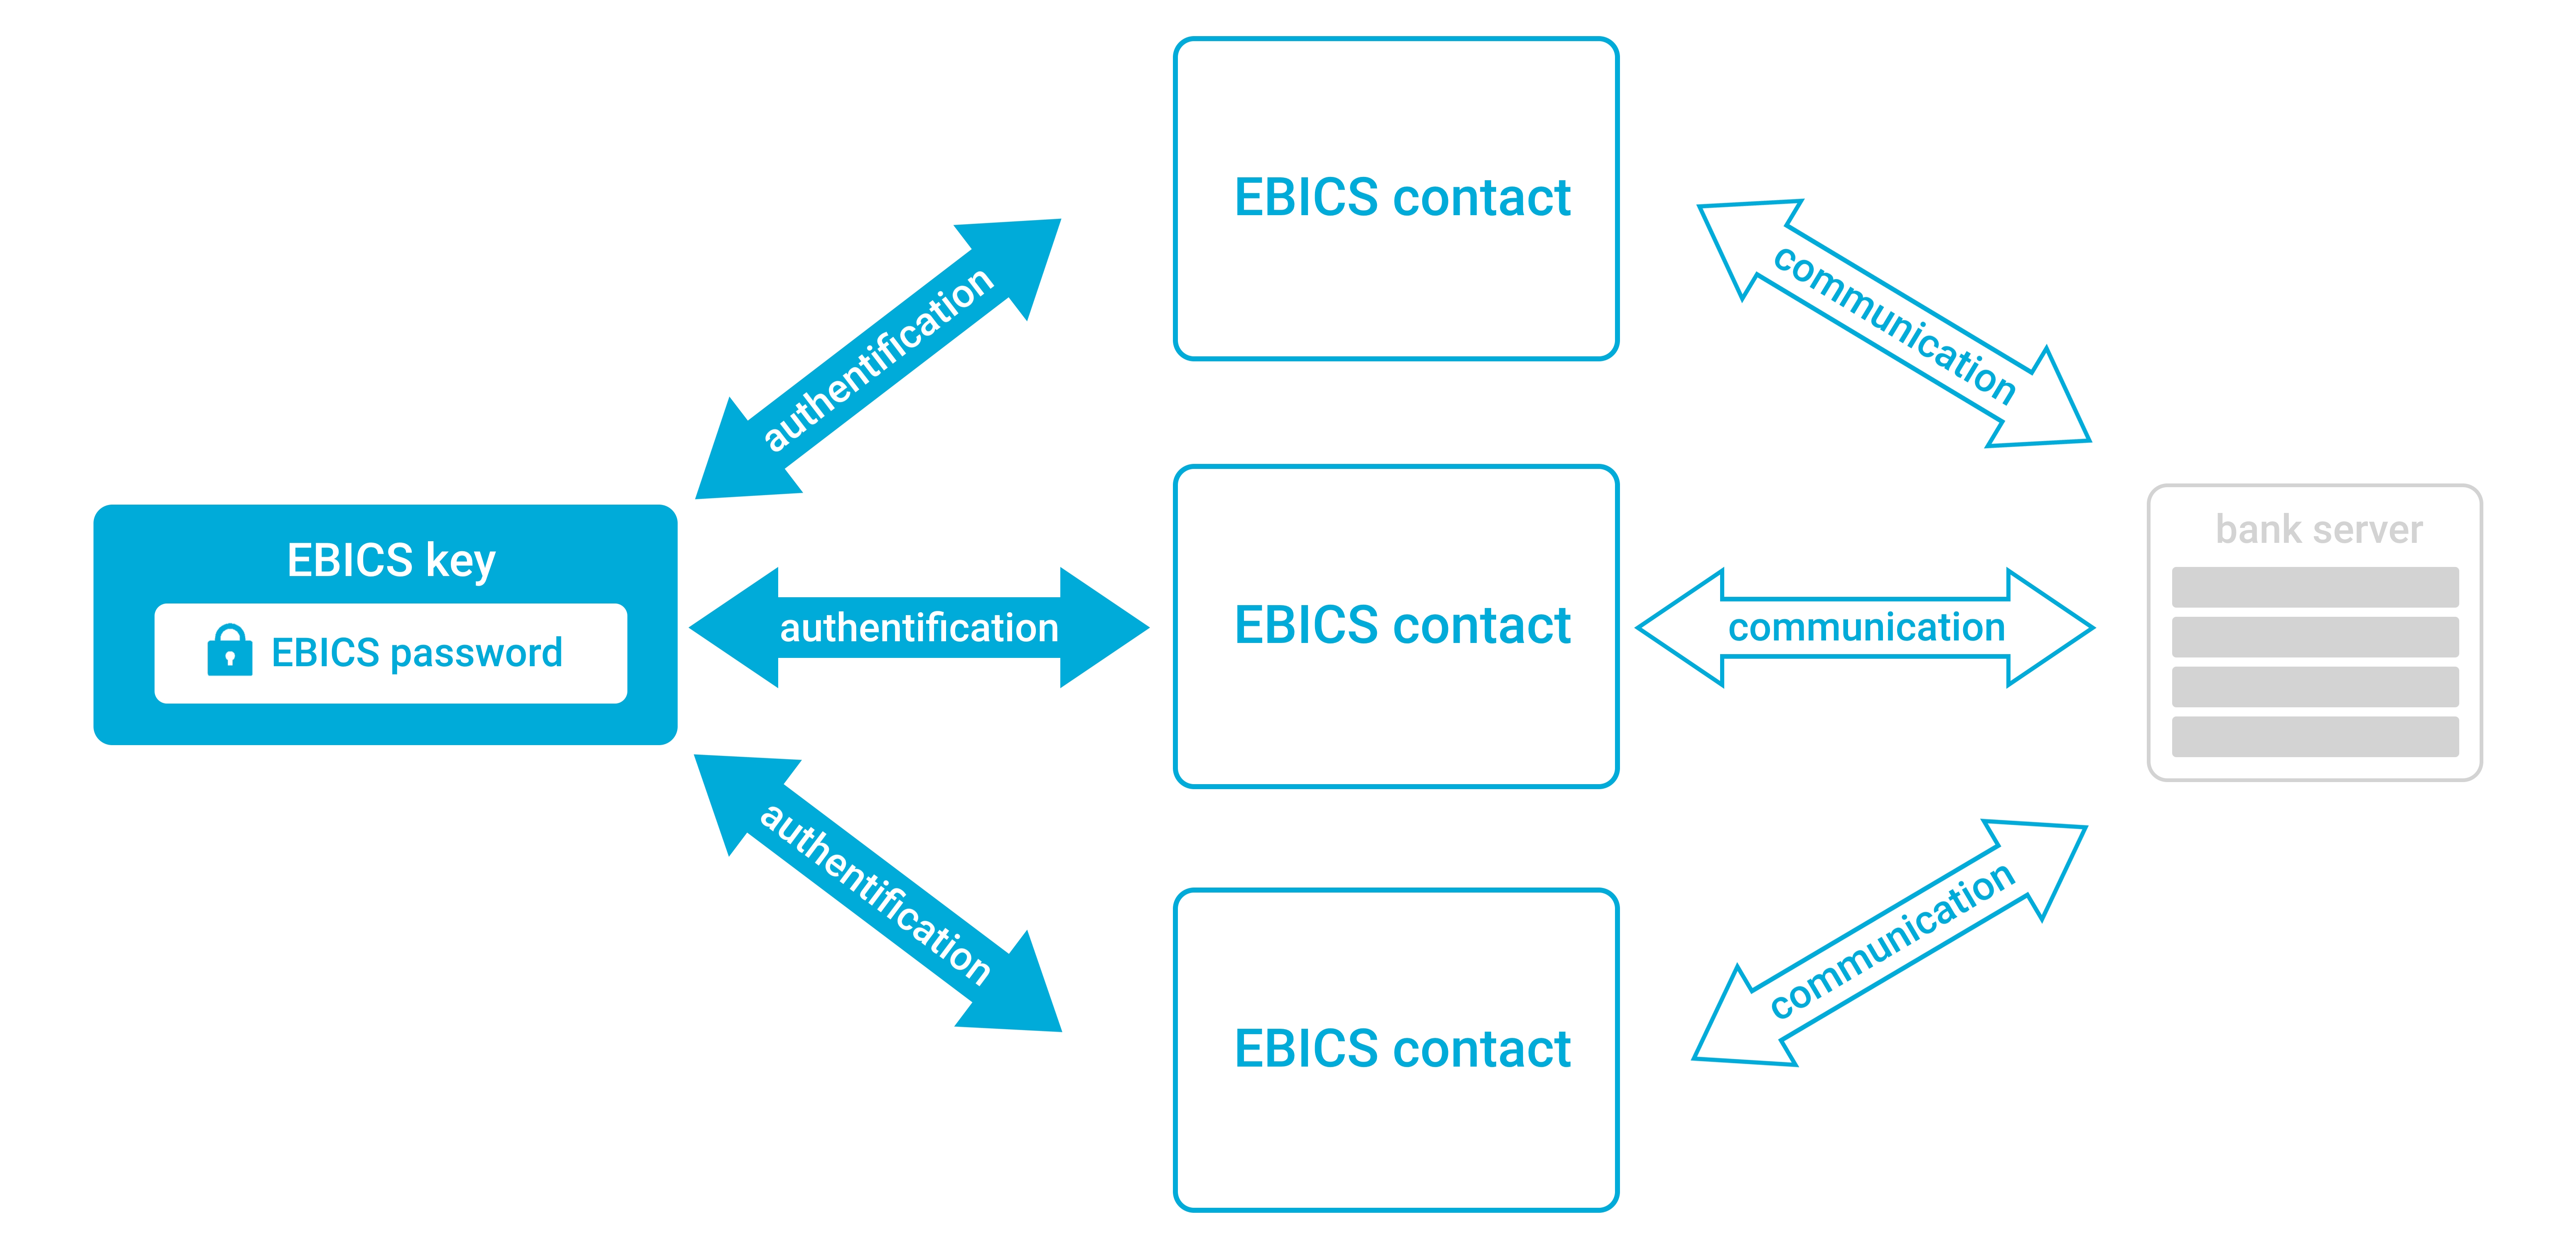 EBICS konzept visualisierung englisch.jpg